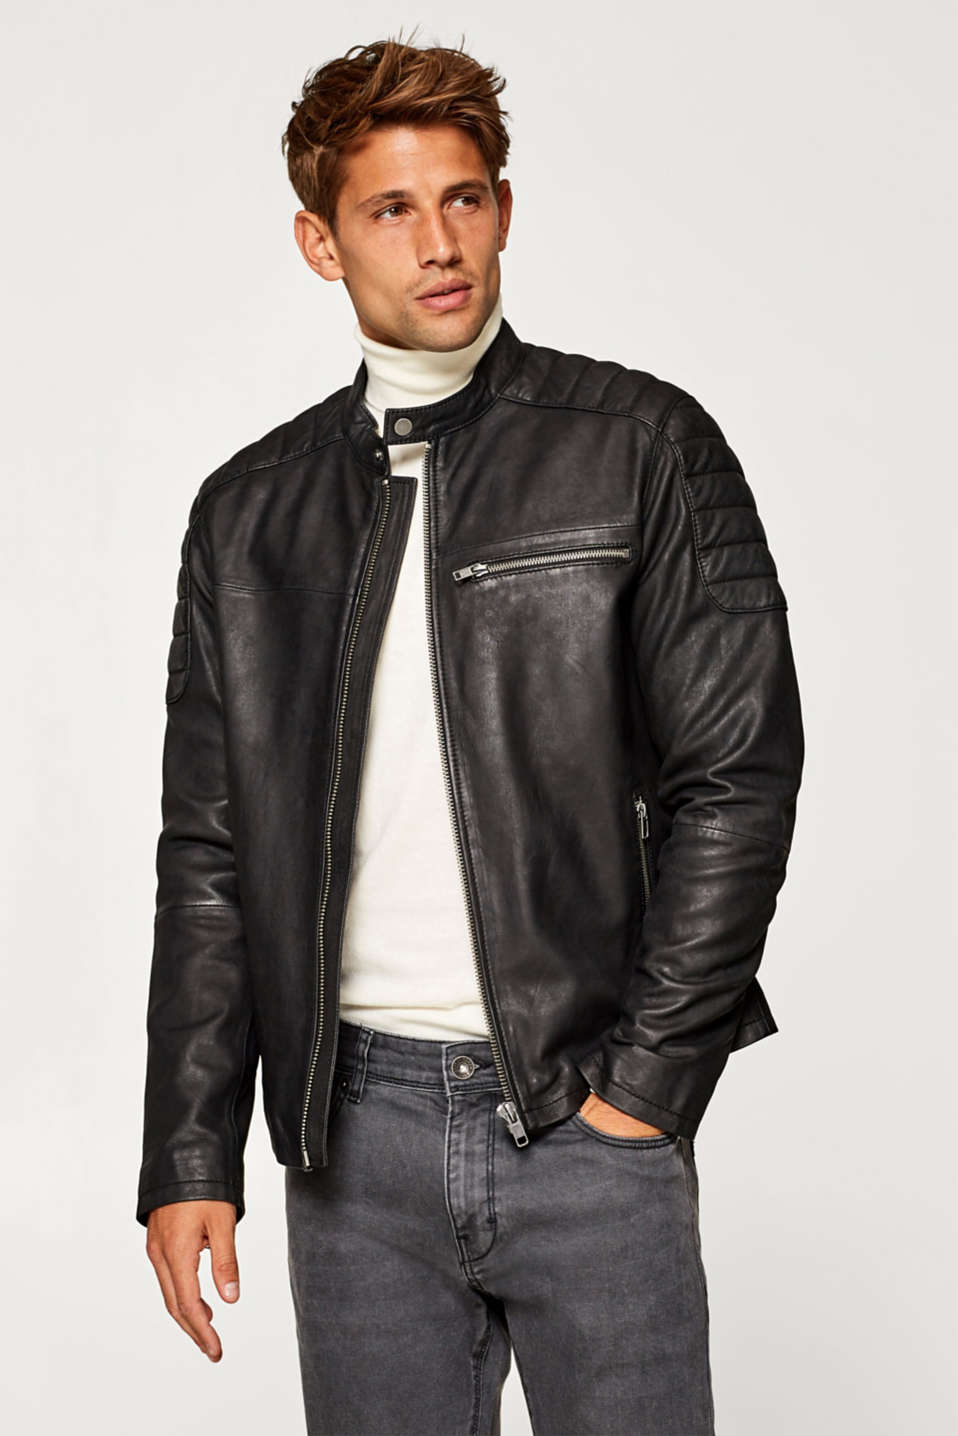 Esprit - Leather biker jacket at our Online Shop